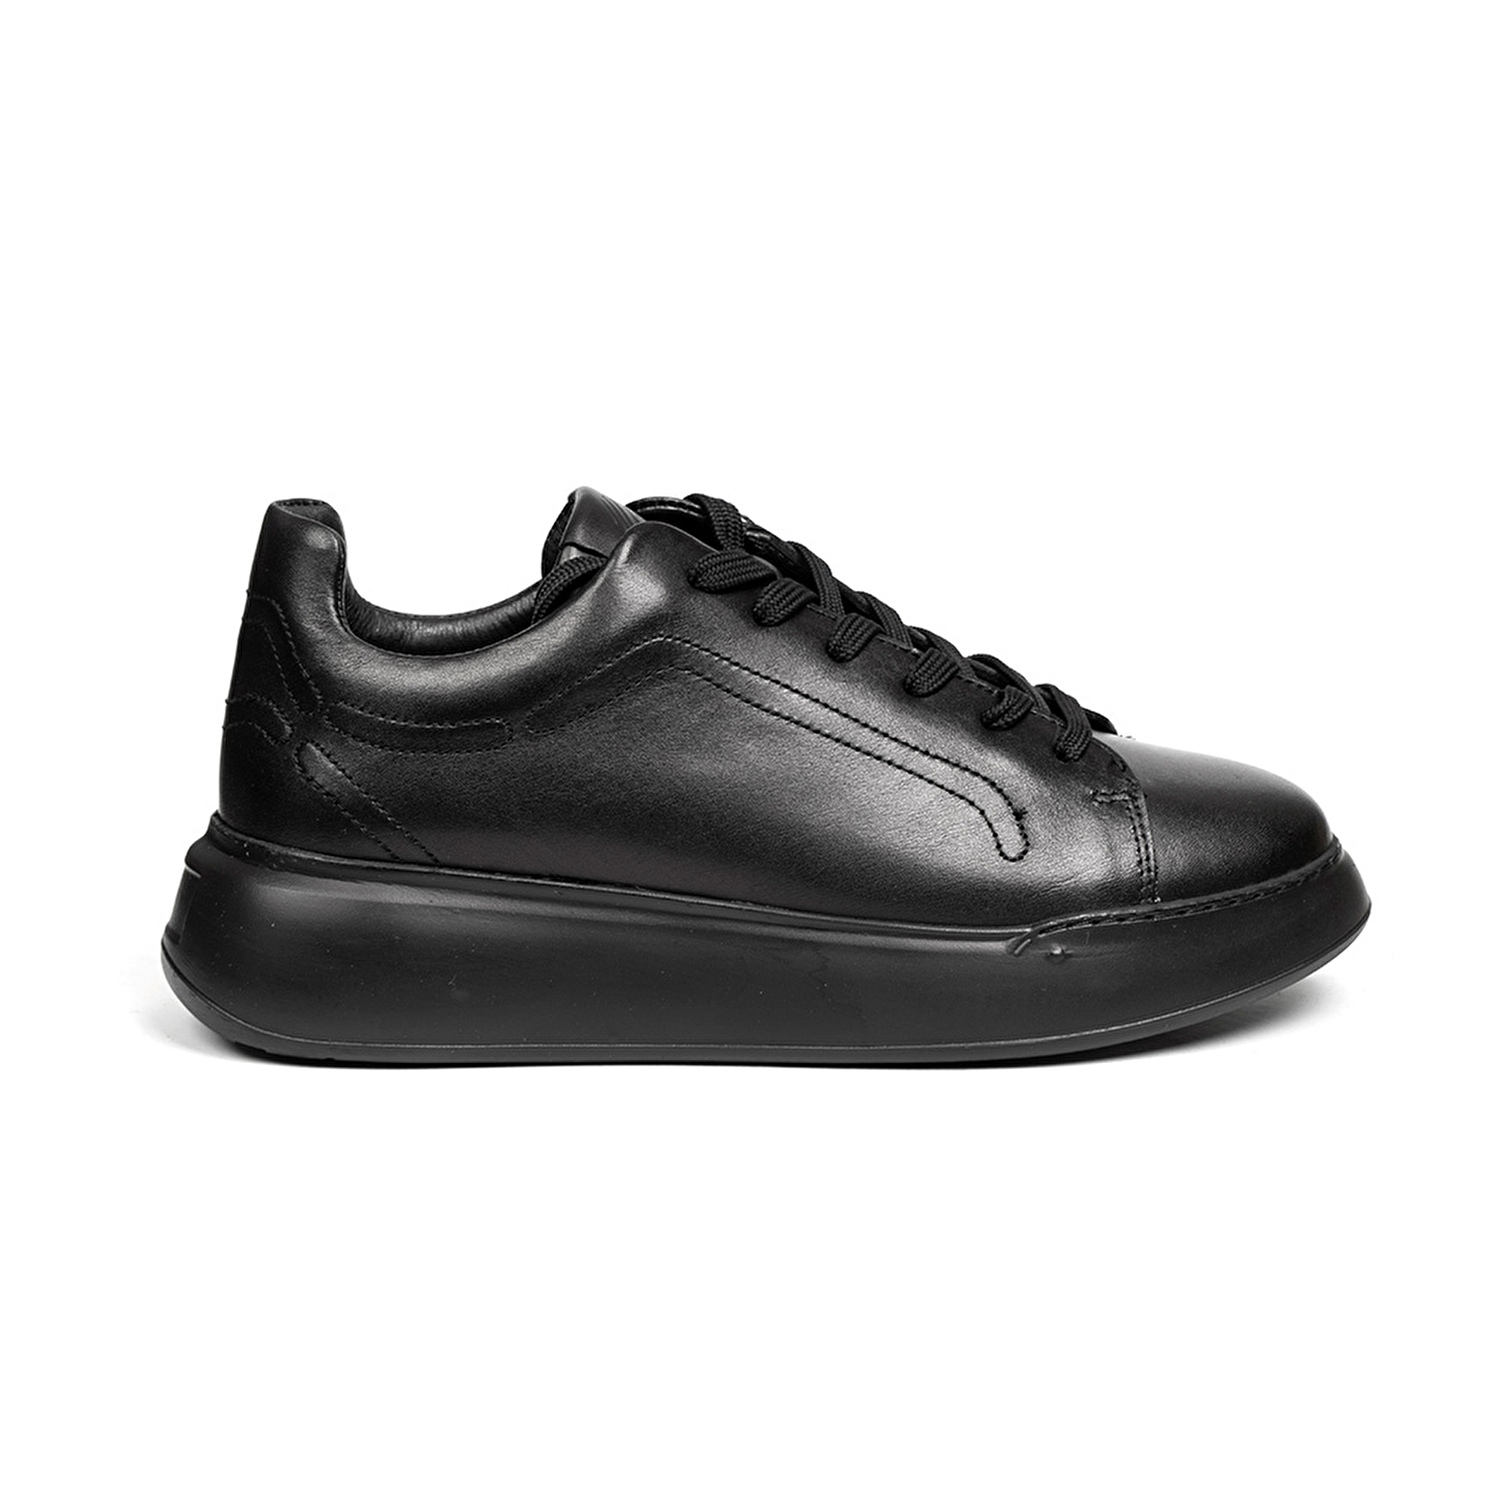 Kadın Siyah Hakiki Deri Sneaker Ayakkabı 2K2SA32150-1